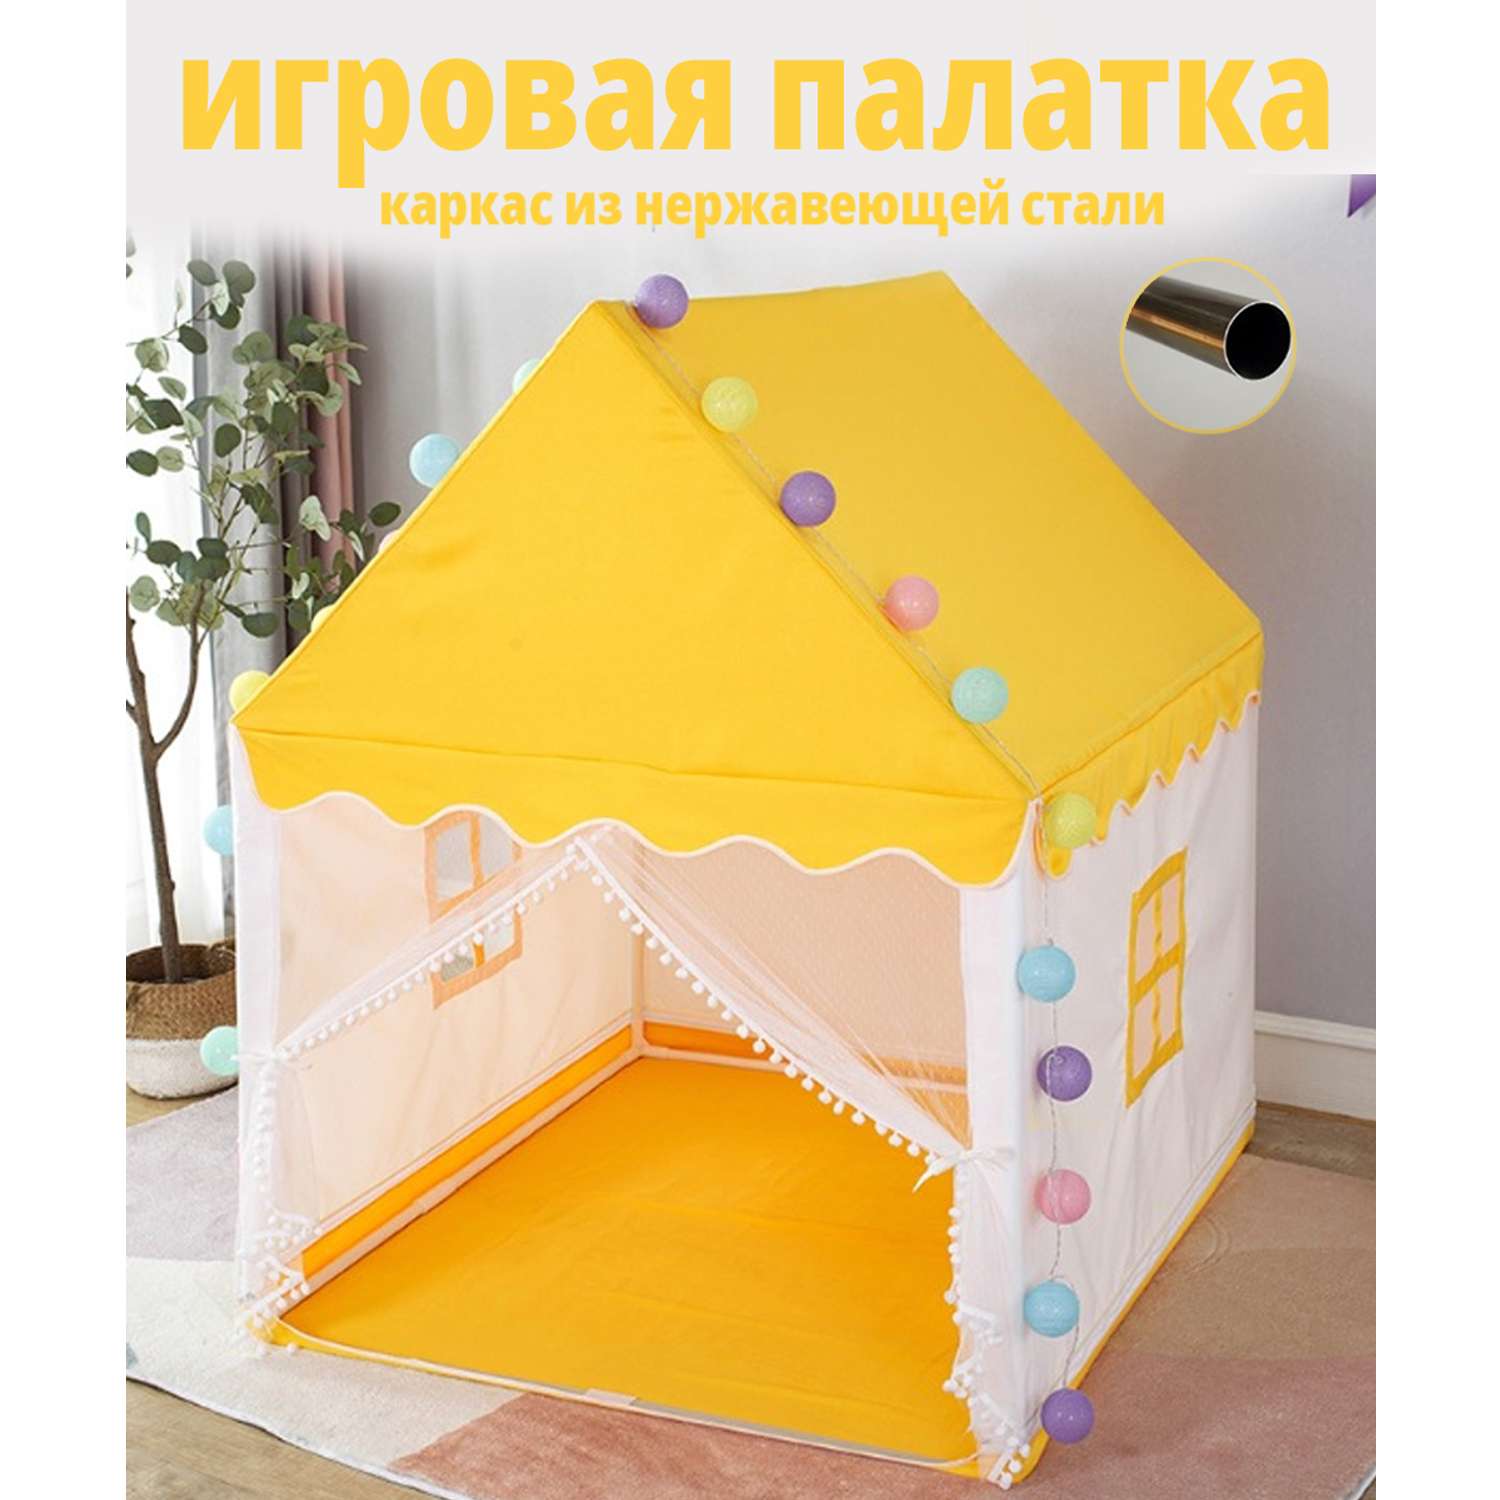 Детский домик для дачи - варианты и строительство своими руками